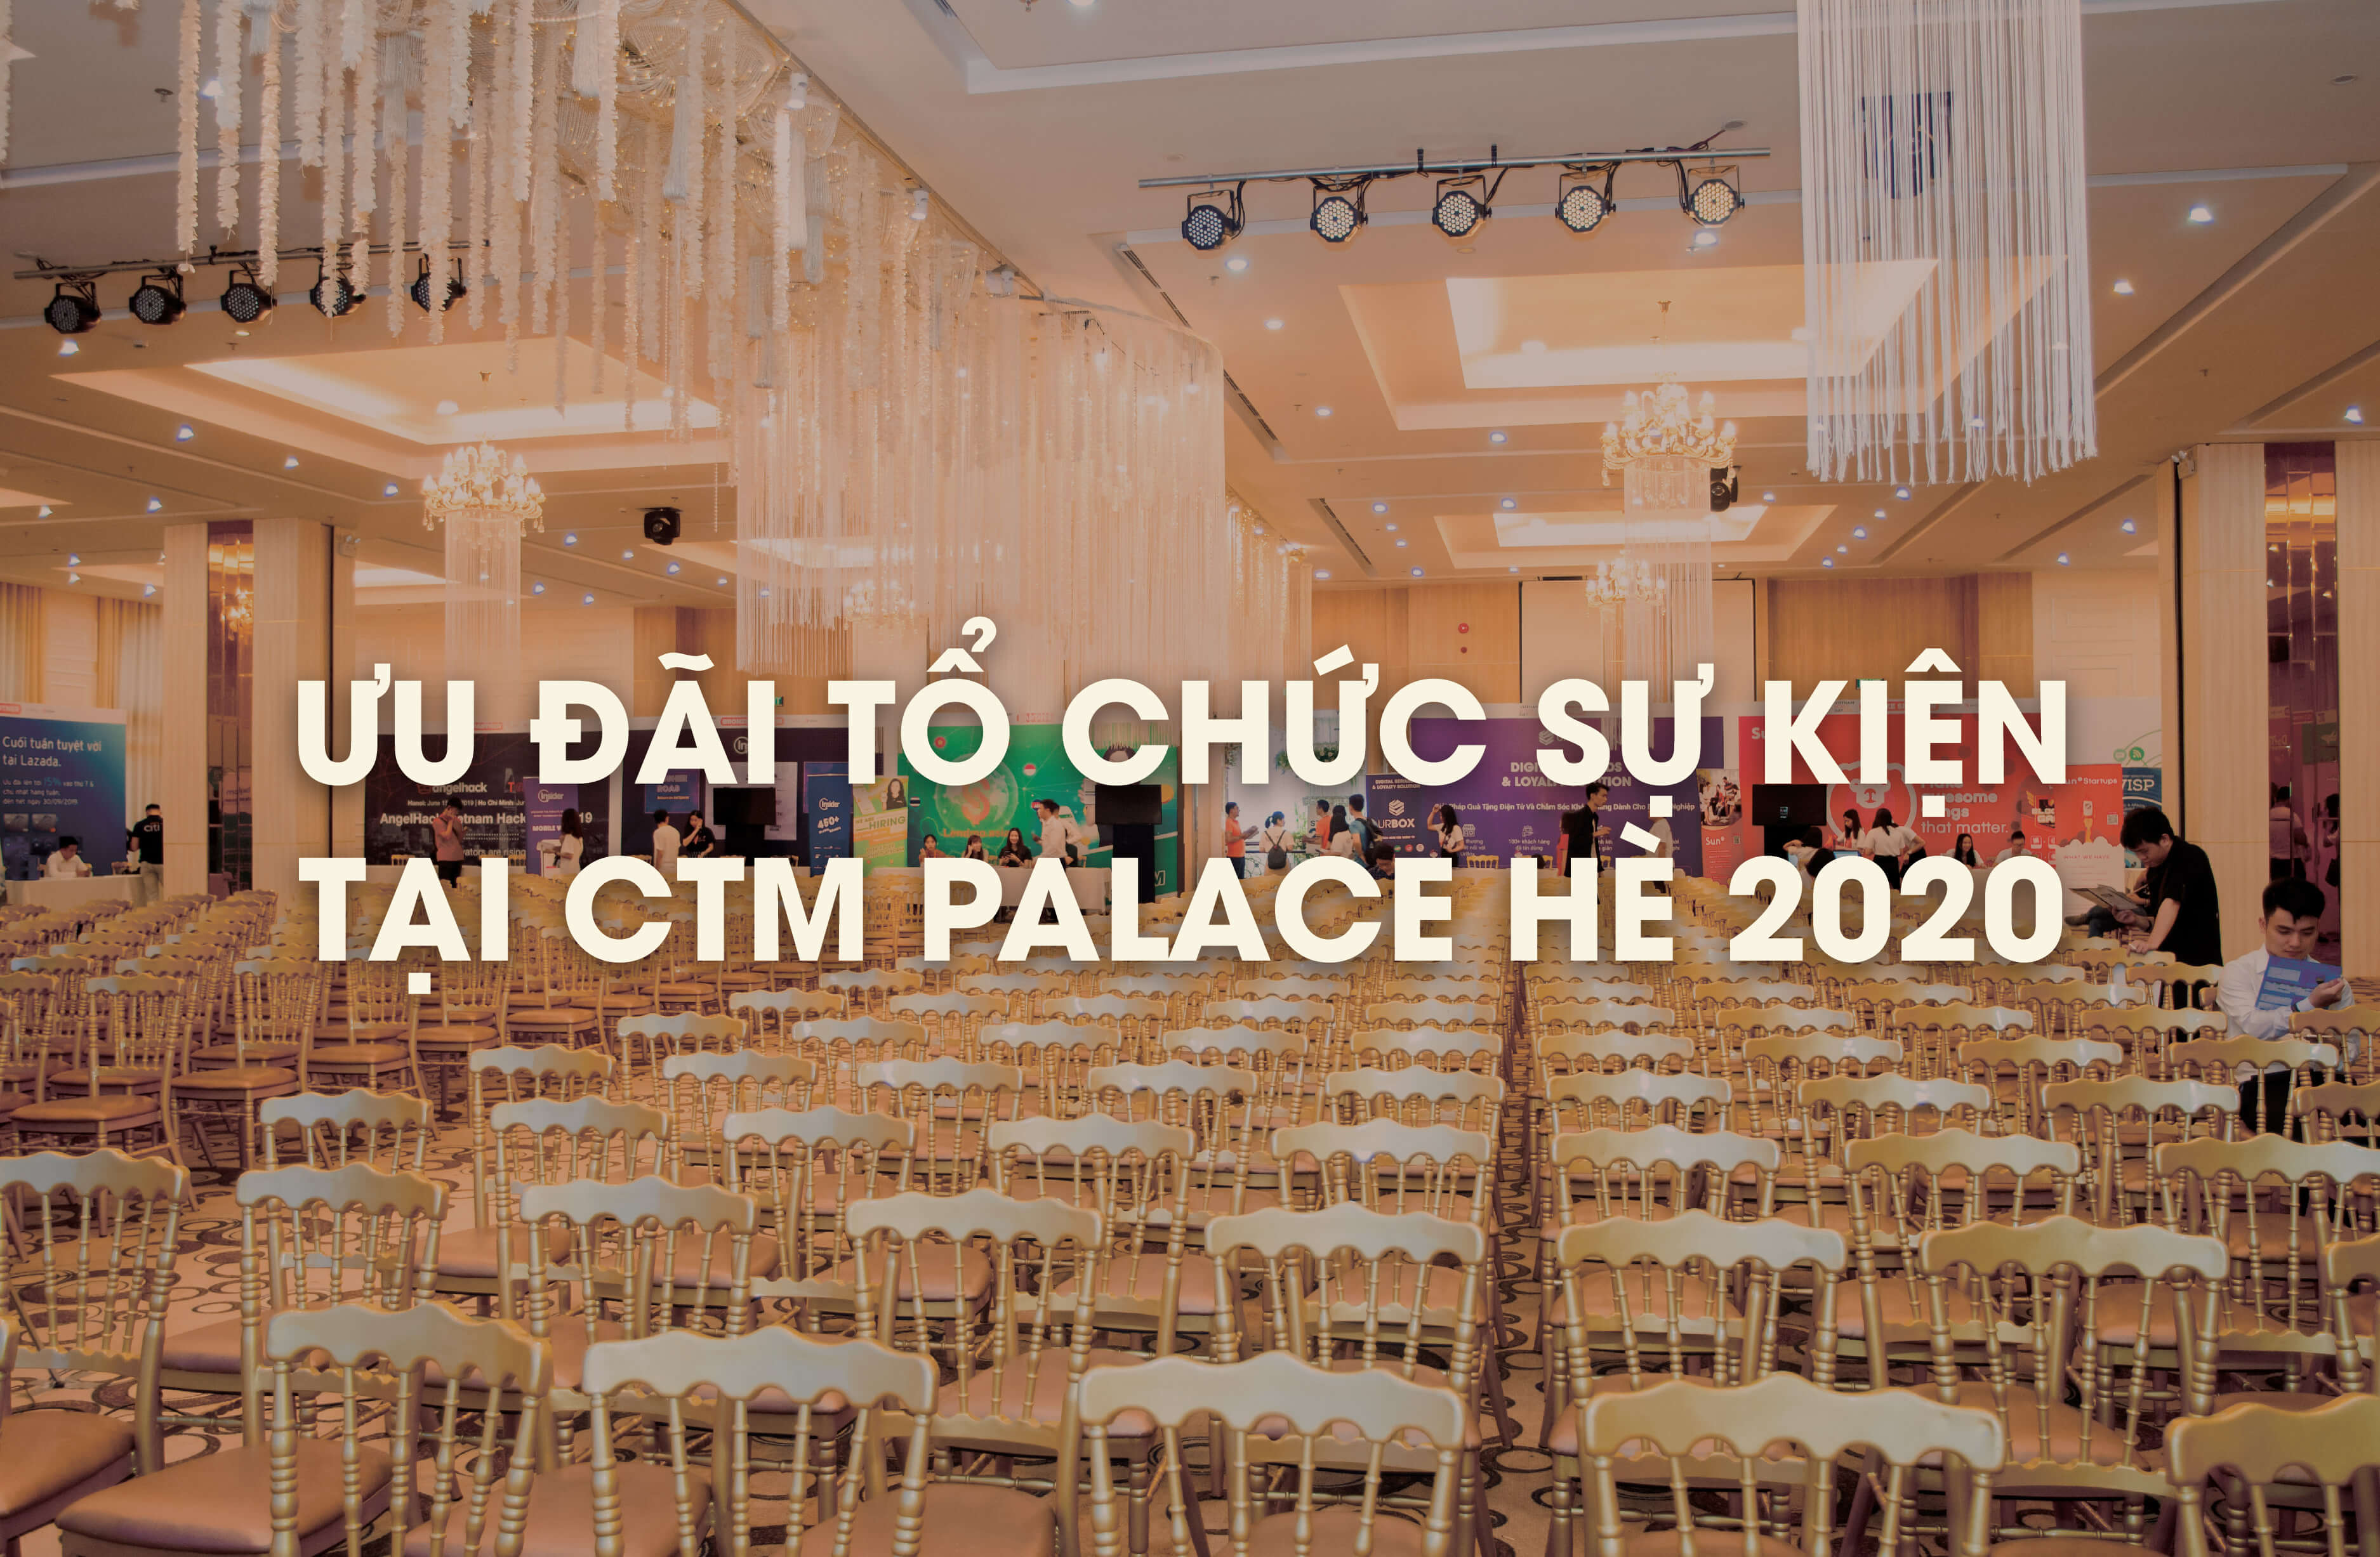 Gói ưu đãi tổ chức sự kiện tại CTM Palace hè 2020